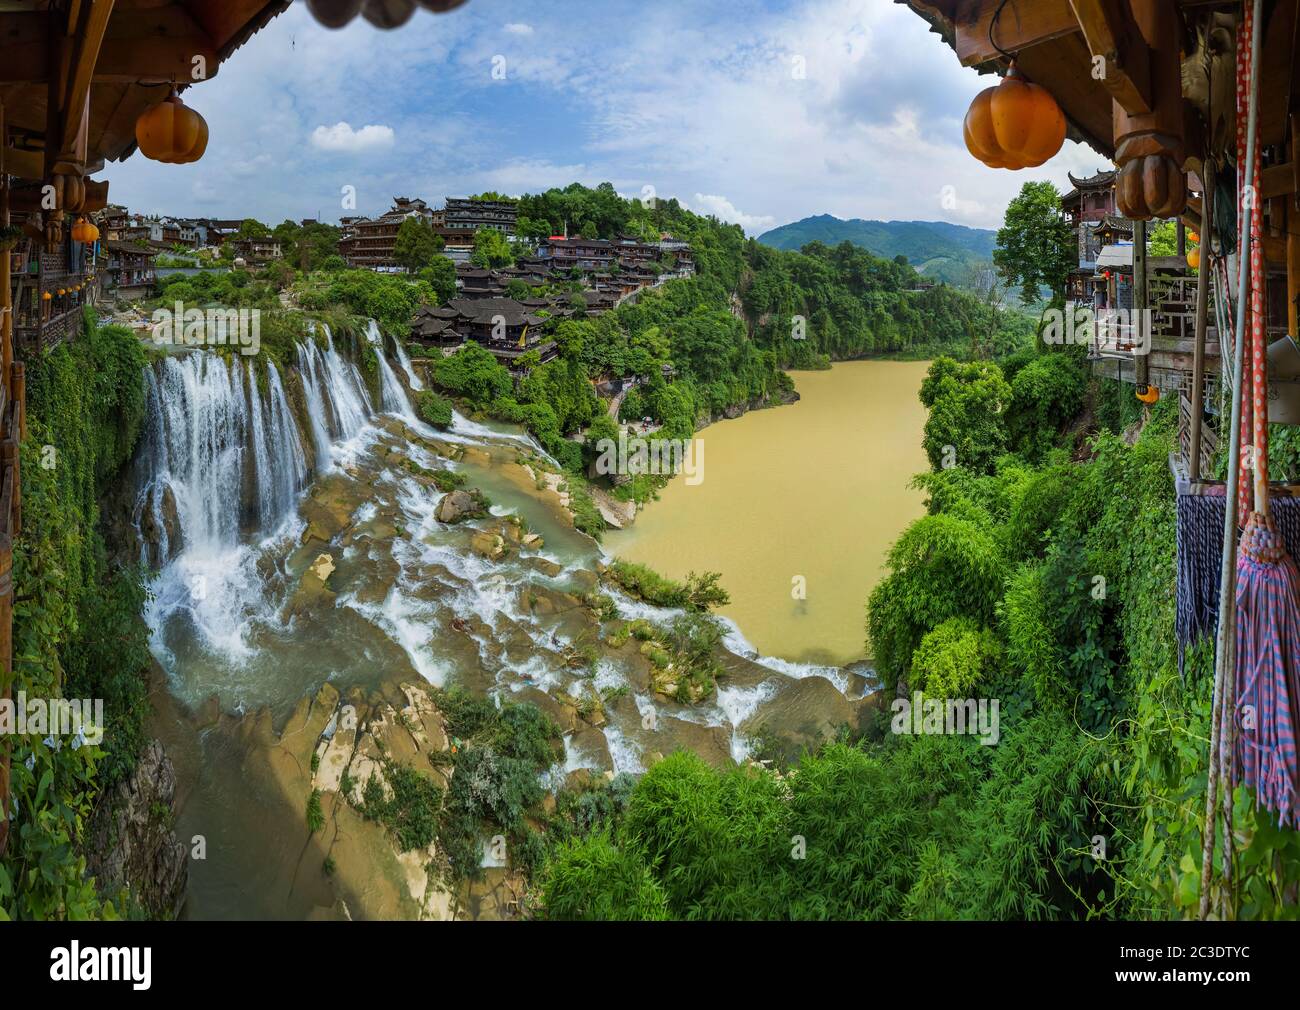 Furong ancient village and waterfall - Hunan China Stock Photo